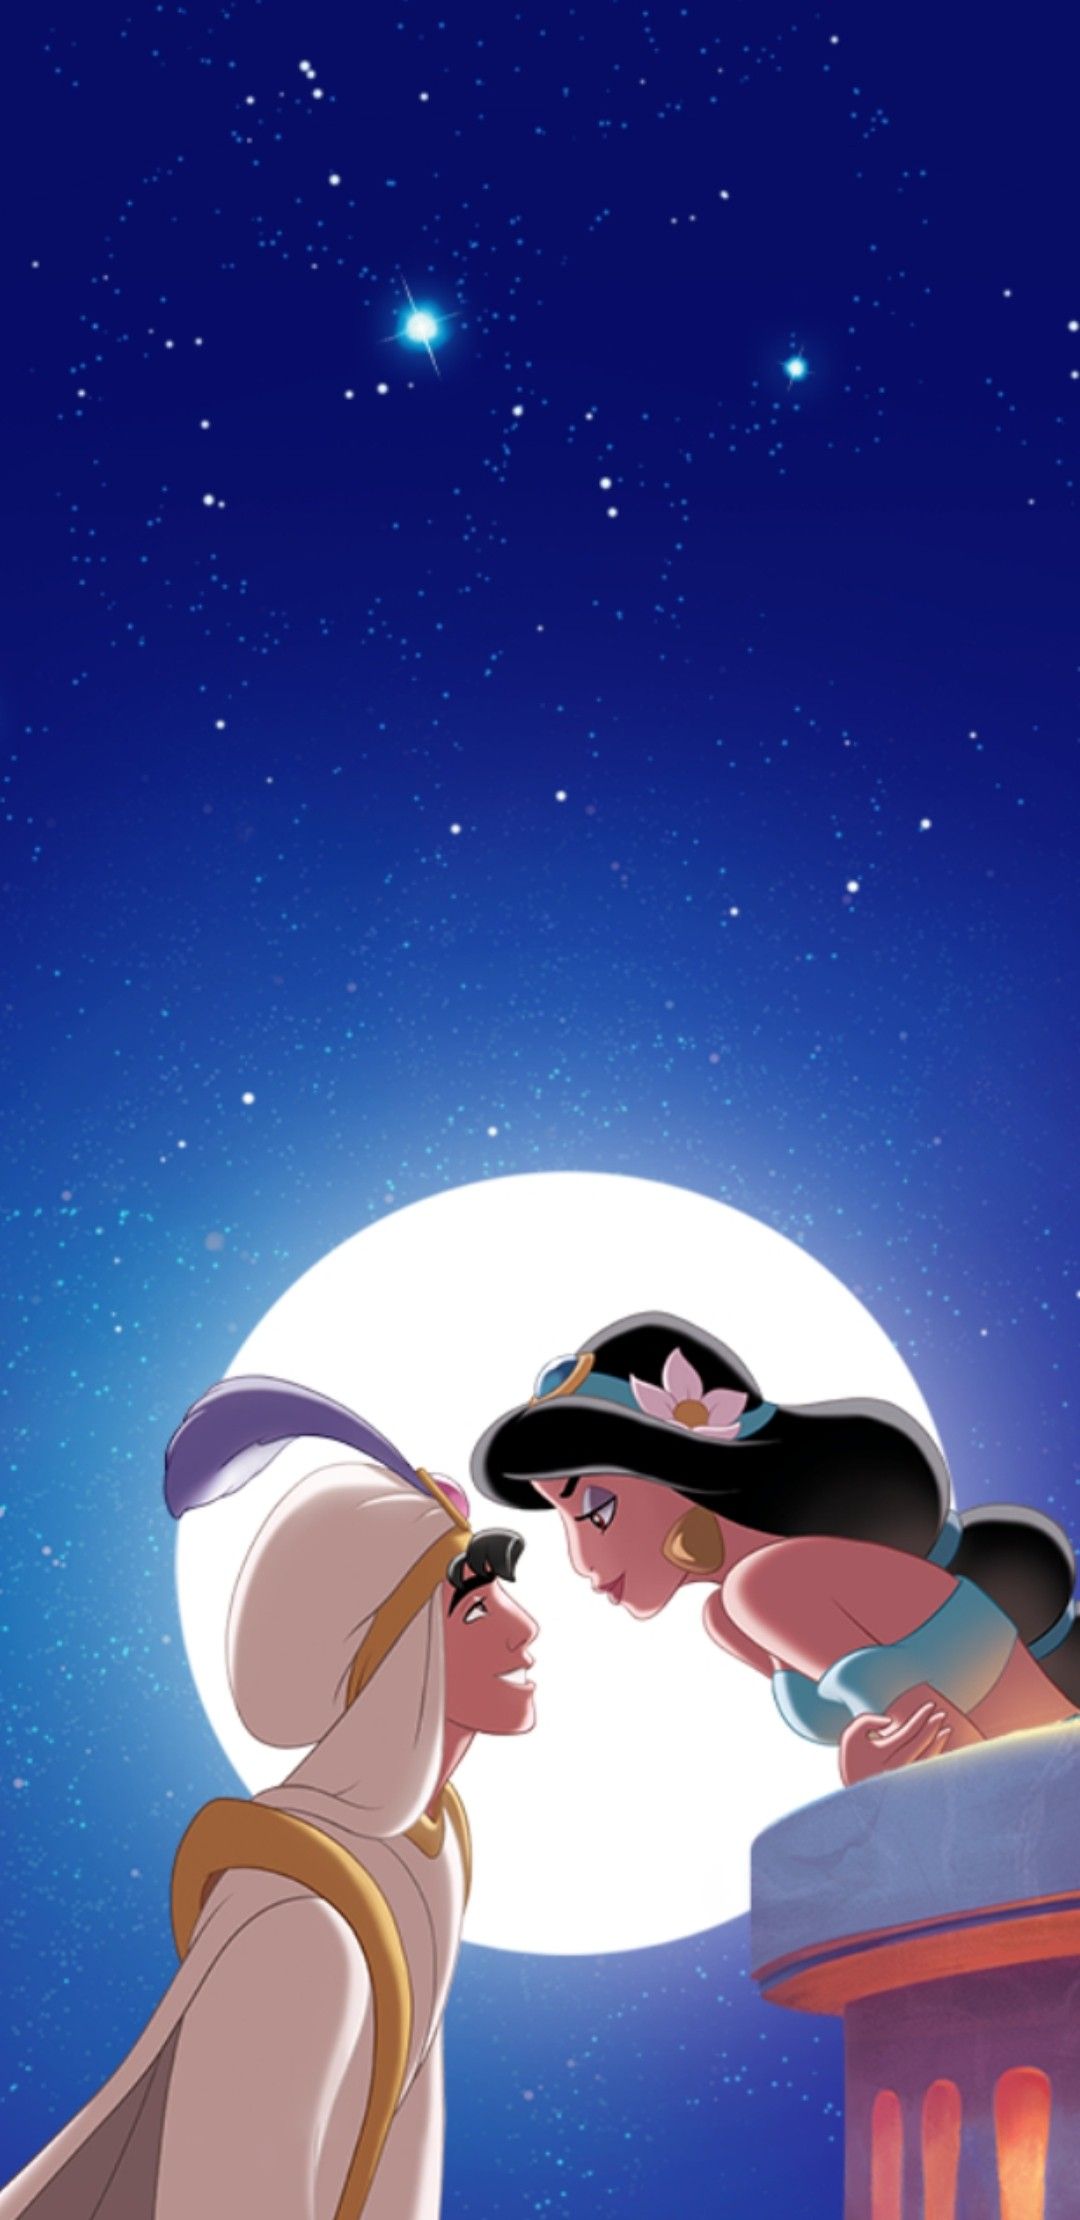 Aladdin & Jasmine. Disney princess picture, Aladdin wallpaper, Disney princess wallpaper